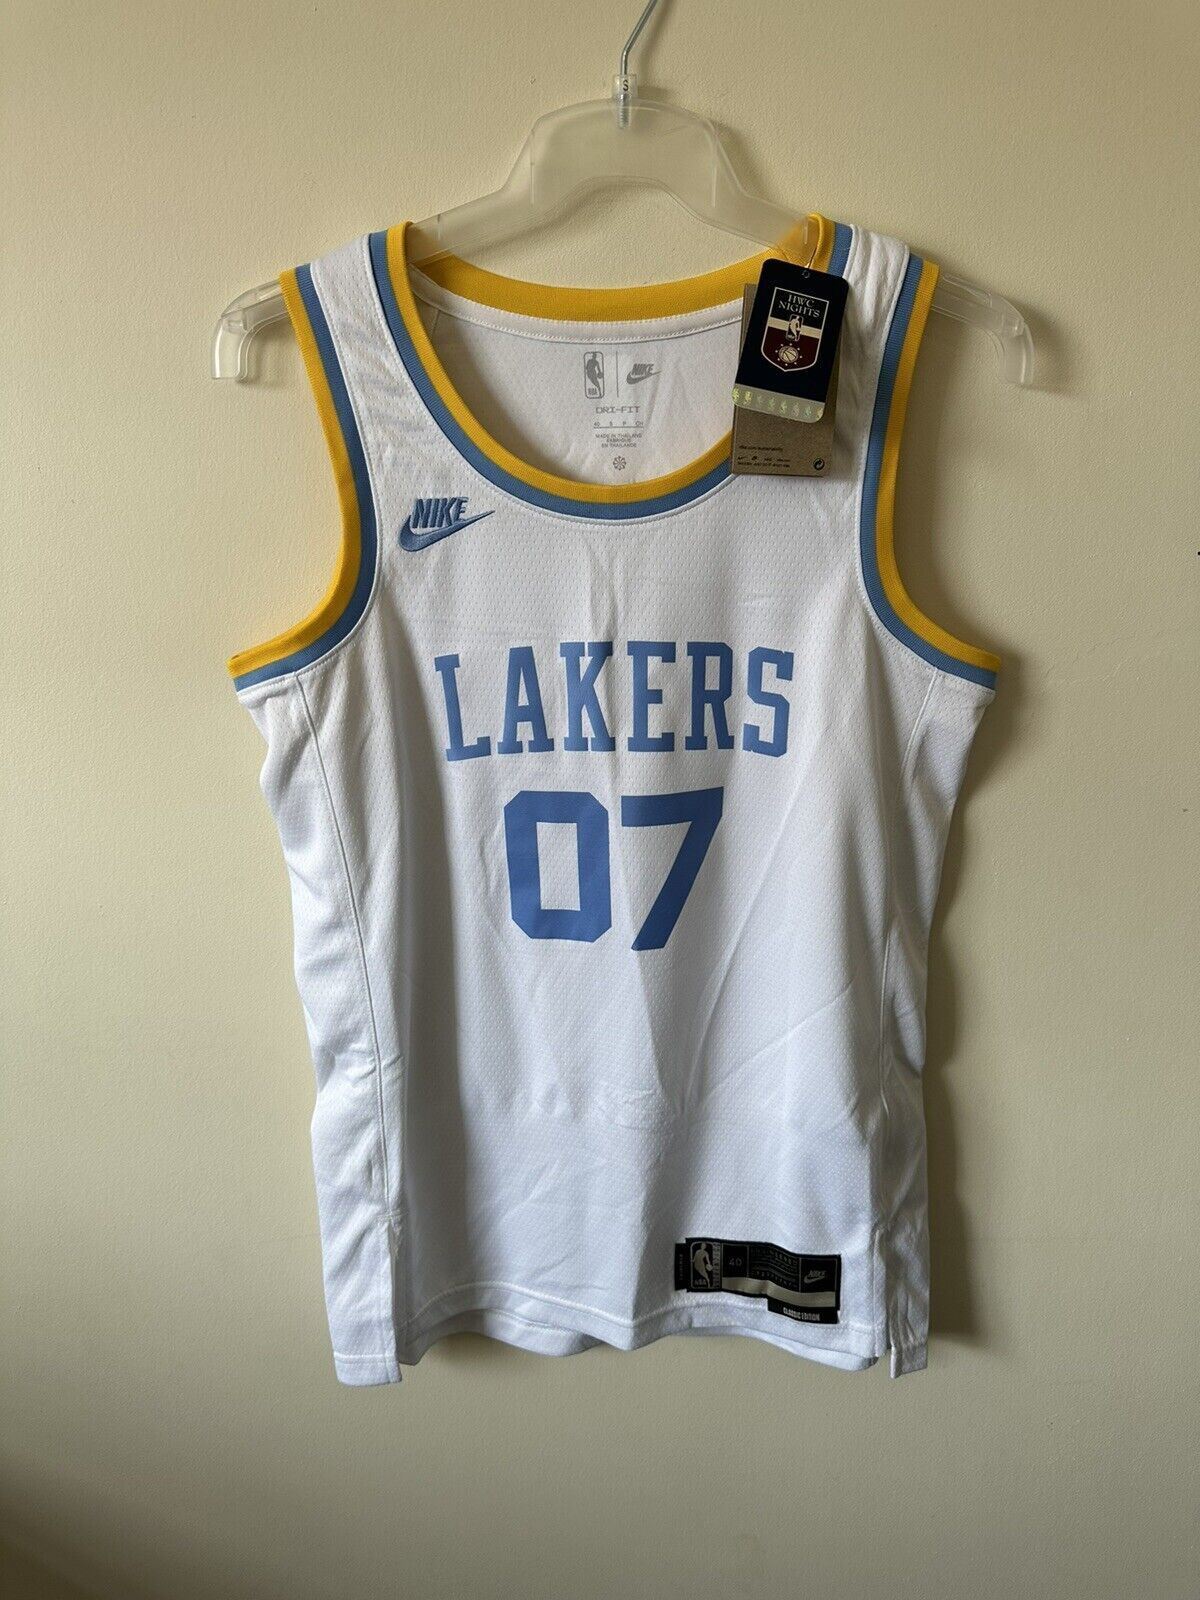 Nike NBA LA Lakers Basketball Jersey JENN 07 Classic Edition Jersey Men’s Small